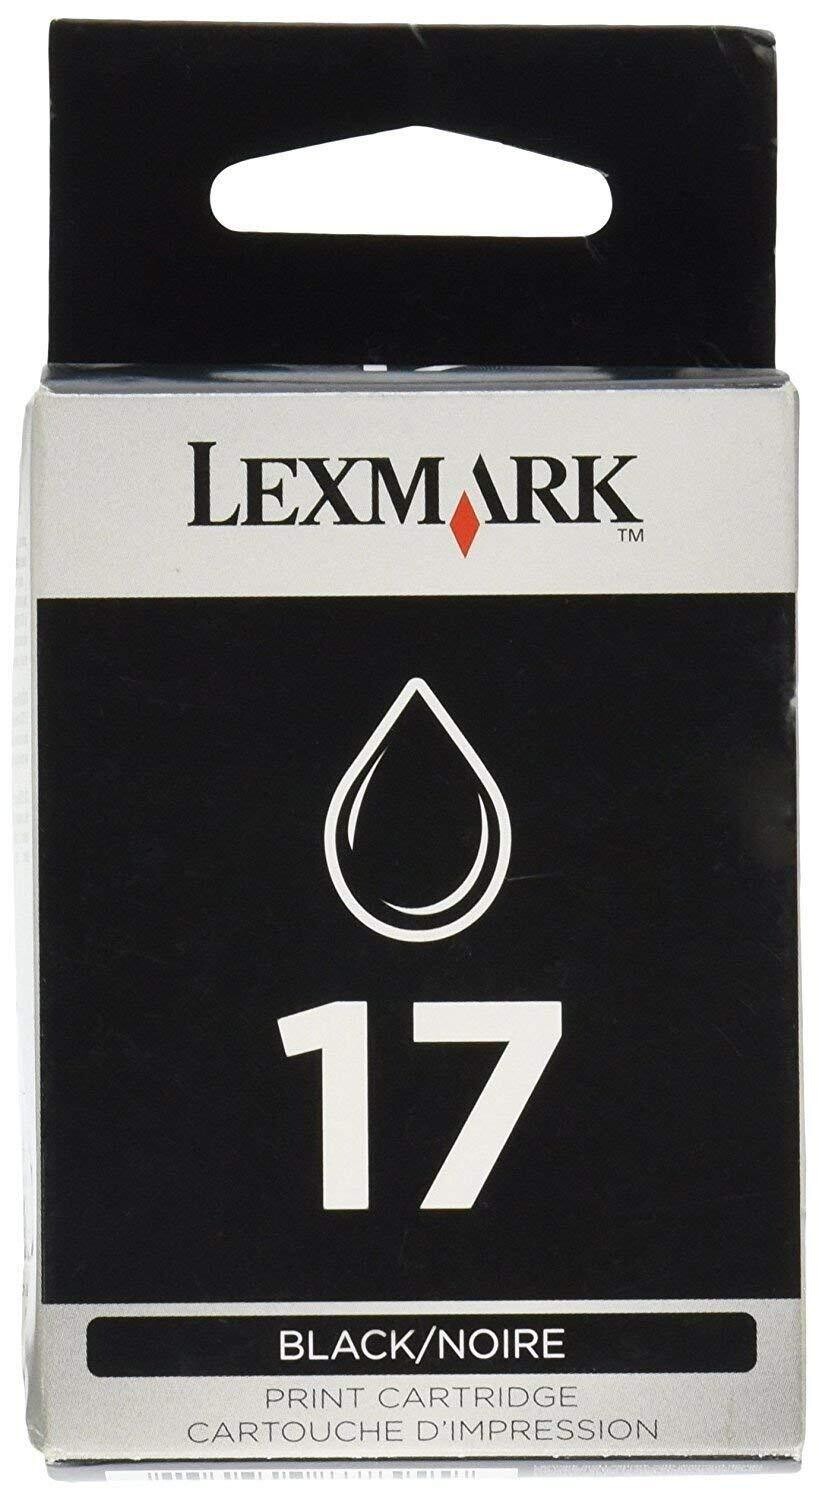 Lexmark 17 Black Ink Cartridge (10N0217)